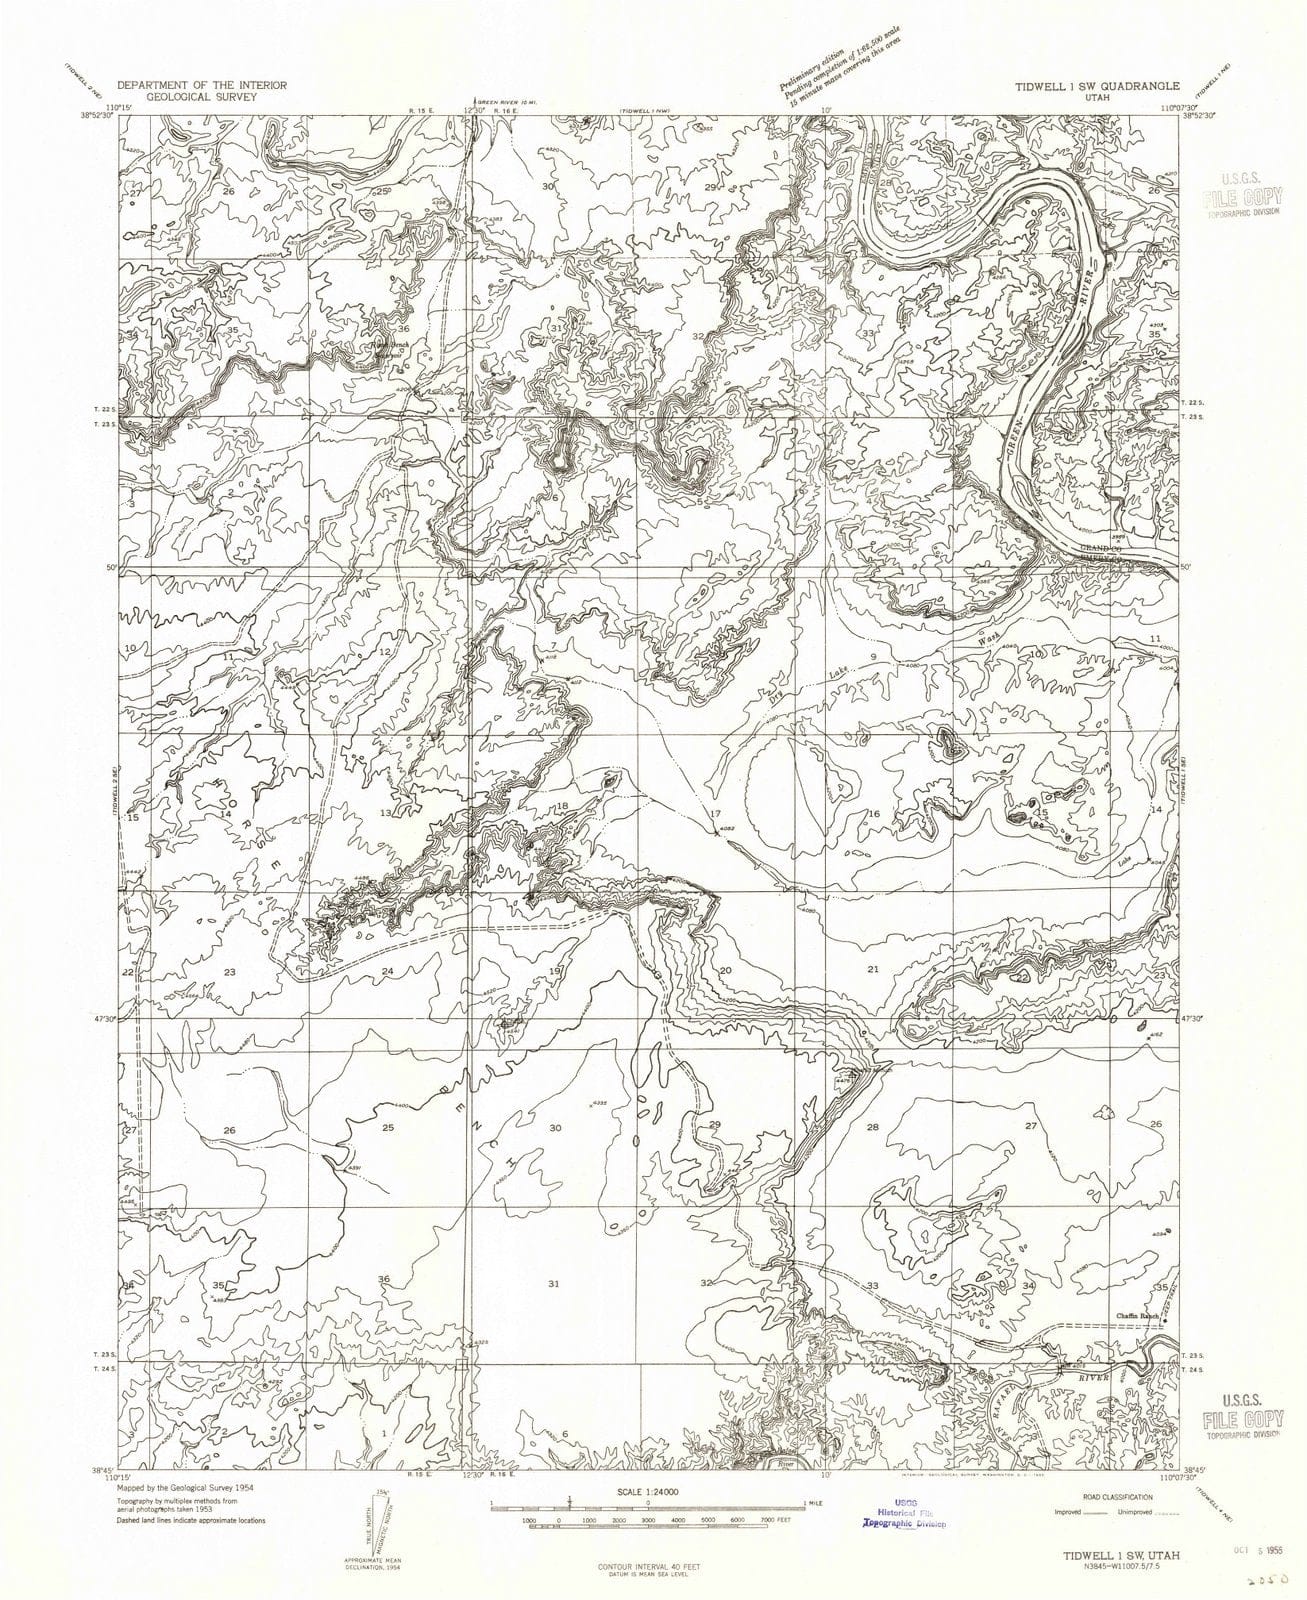 1954 Tidwell 1, UT - Utah - USGS Topographic Map v4